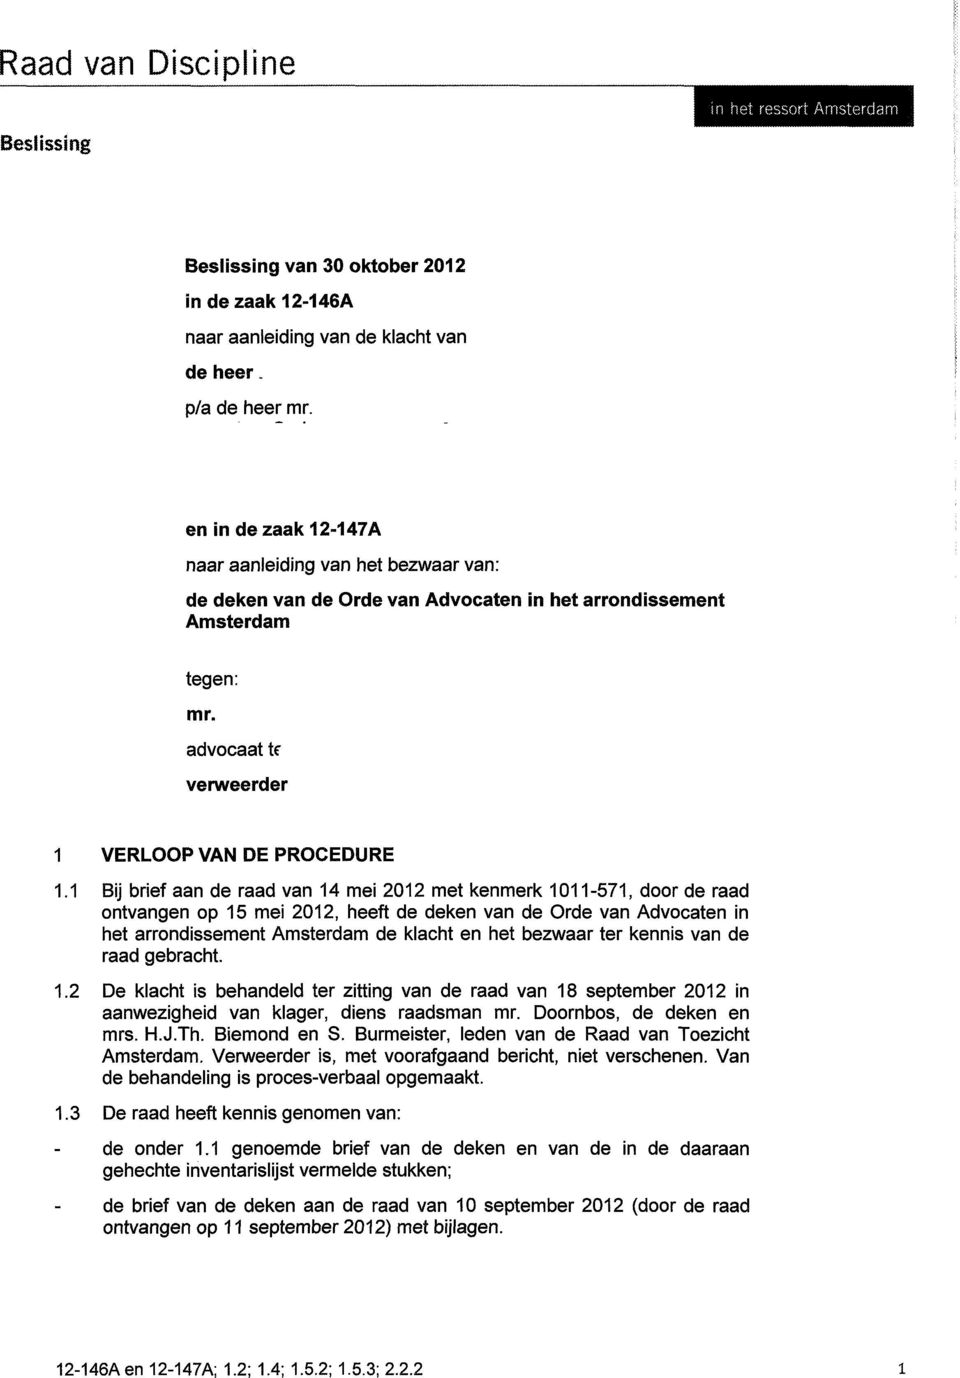 1 Bij brief aan de raad van 14 mei 2012 met kenmerk 1011-571, door de raad ontvangen op 15 mei 2012, heeft de deken van de Orde van Advocaten in het arrondissement Amsterdam de klacht en het bezwaar